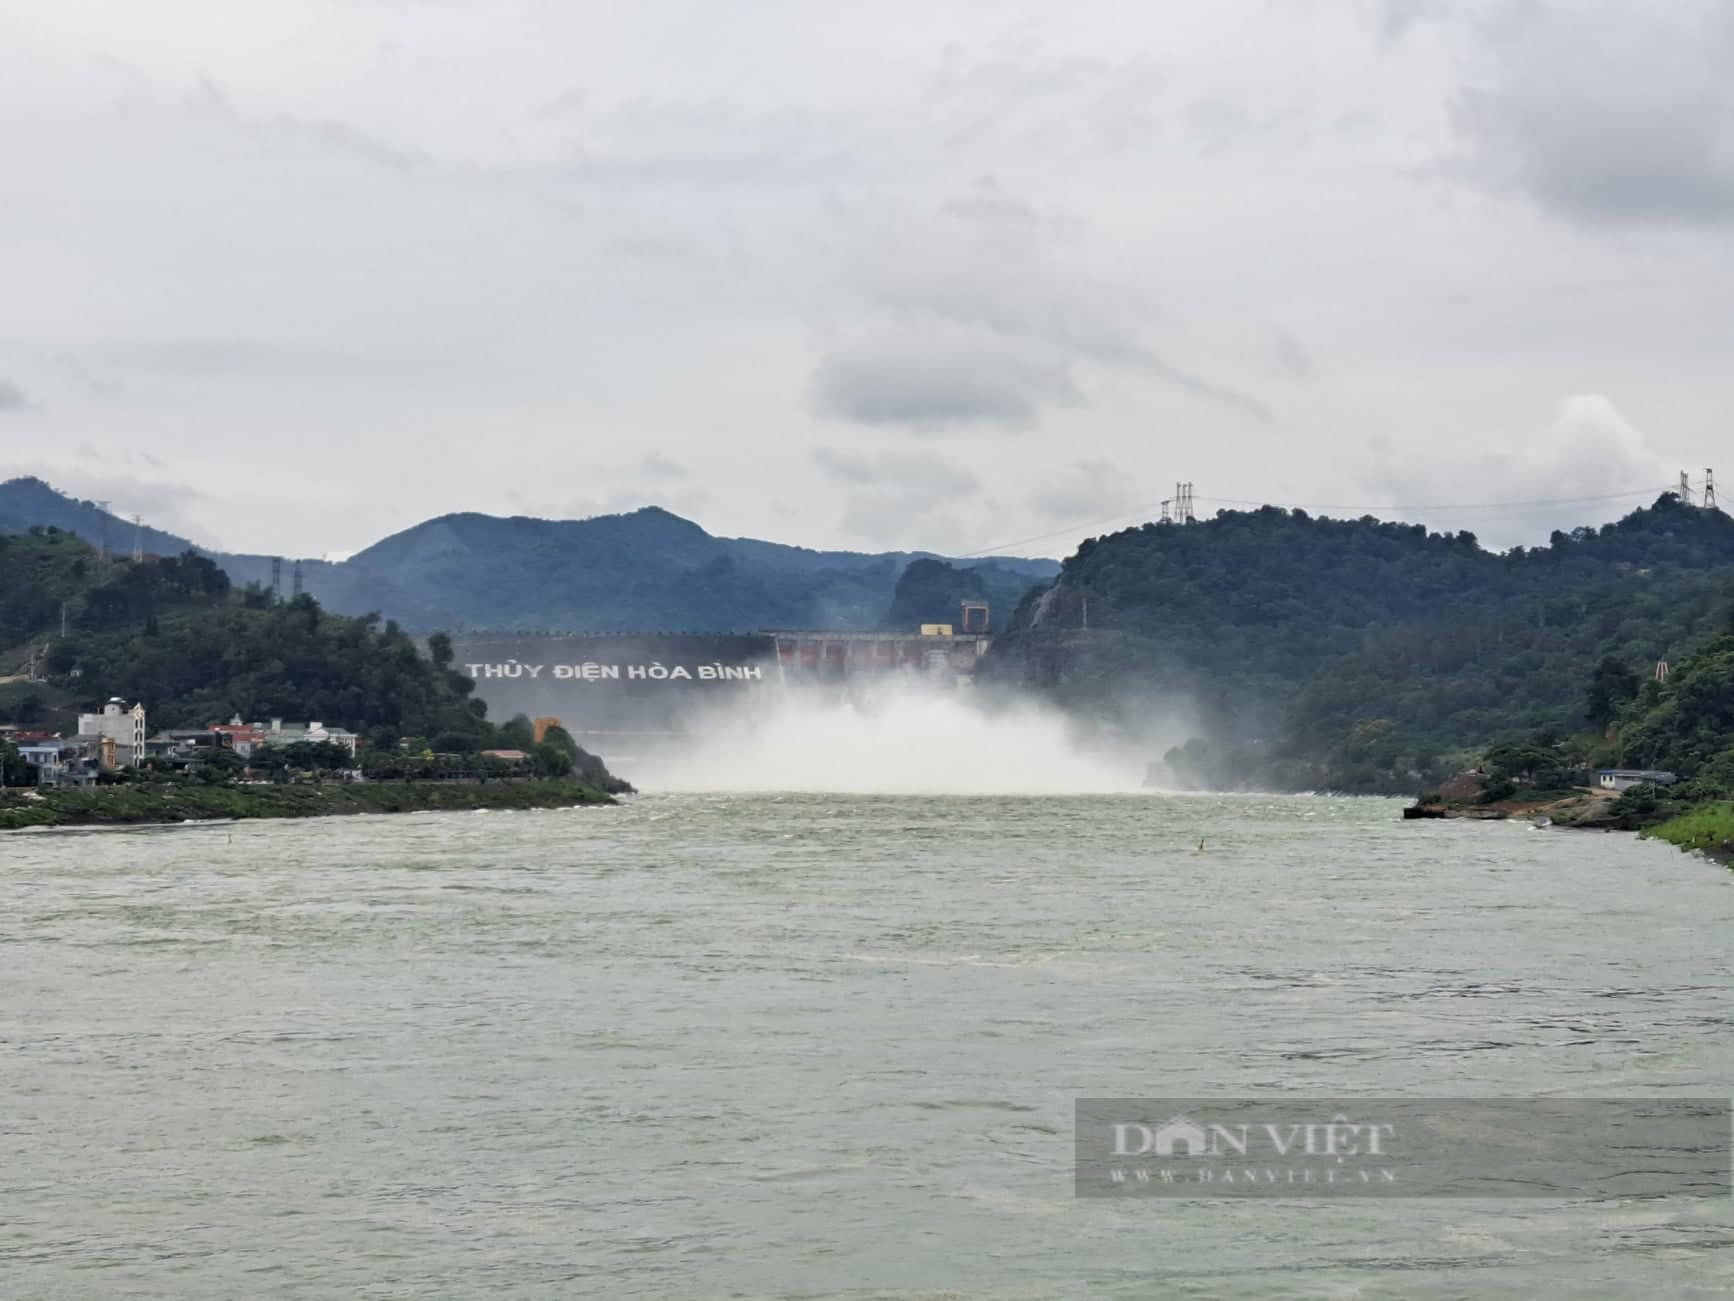 Thủy điện Hòa Bình đang xả lũ: Một thanh niên bị cuốn trôi khi tắm sông Đà - Ảnh 1.